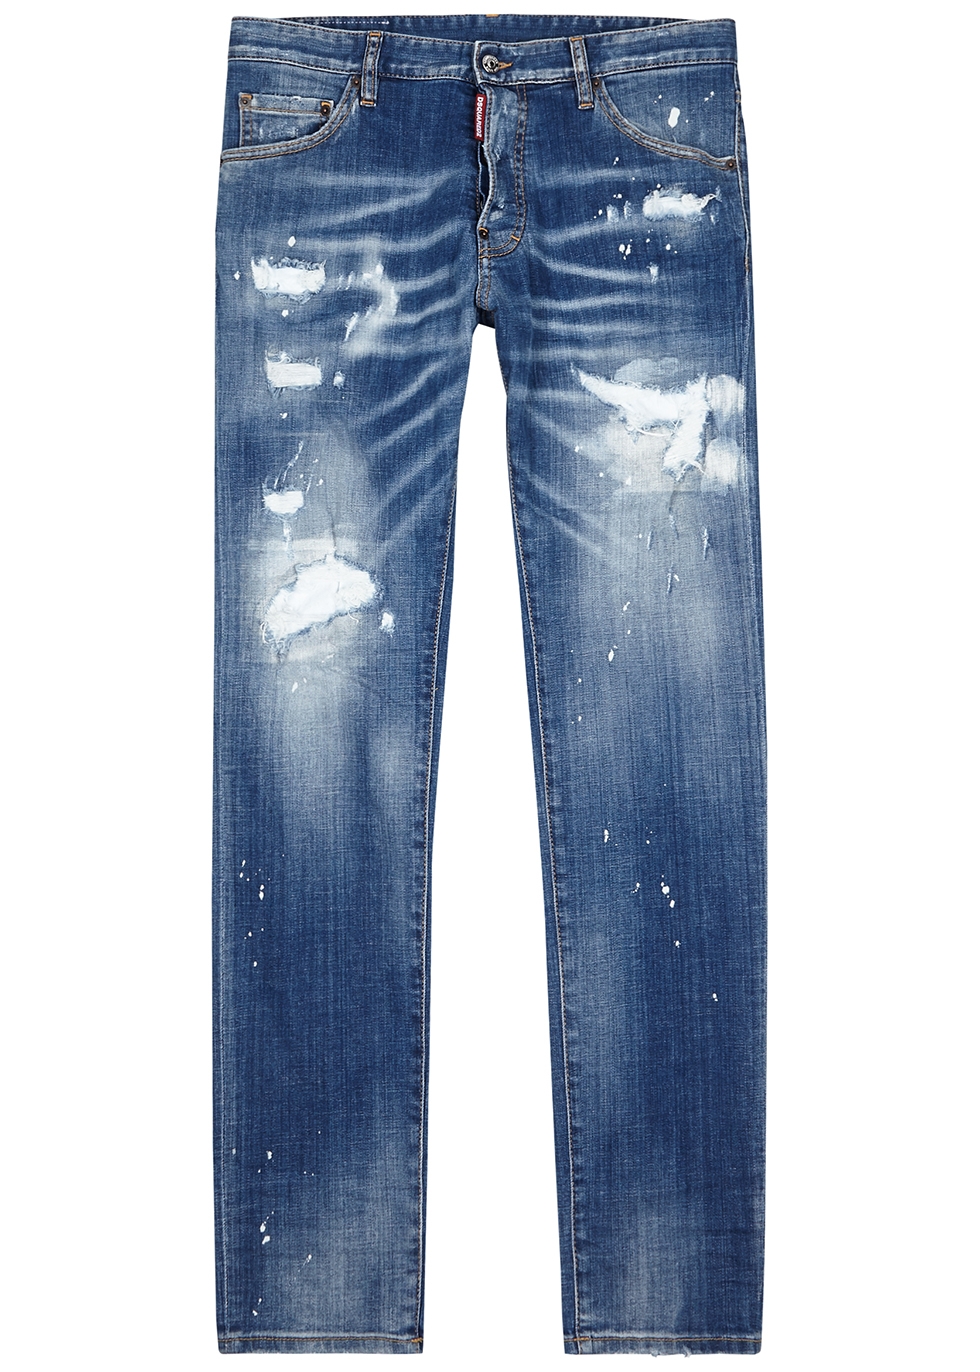 dsquared jeans harvey nichols